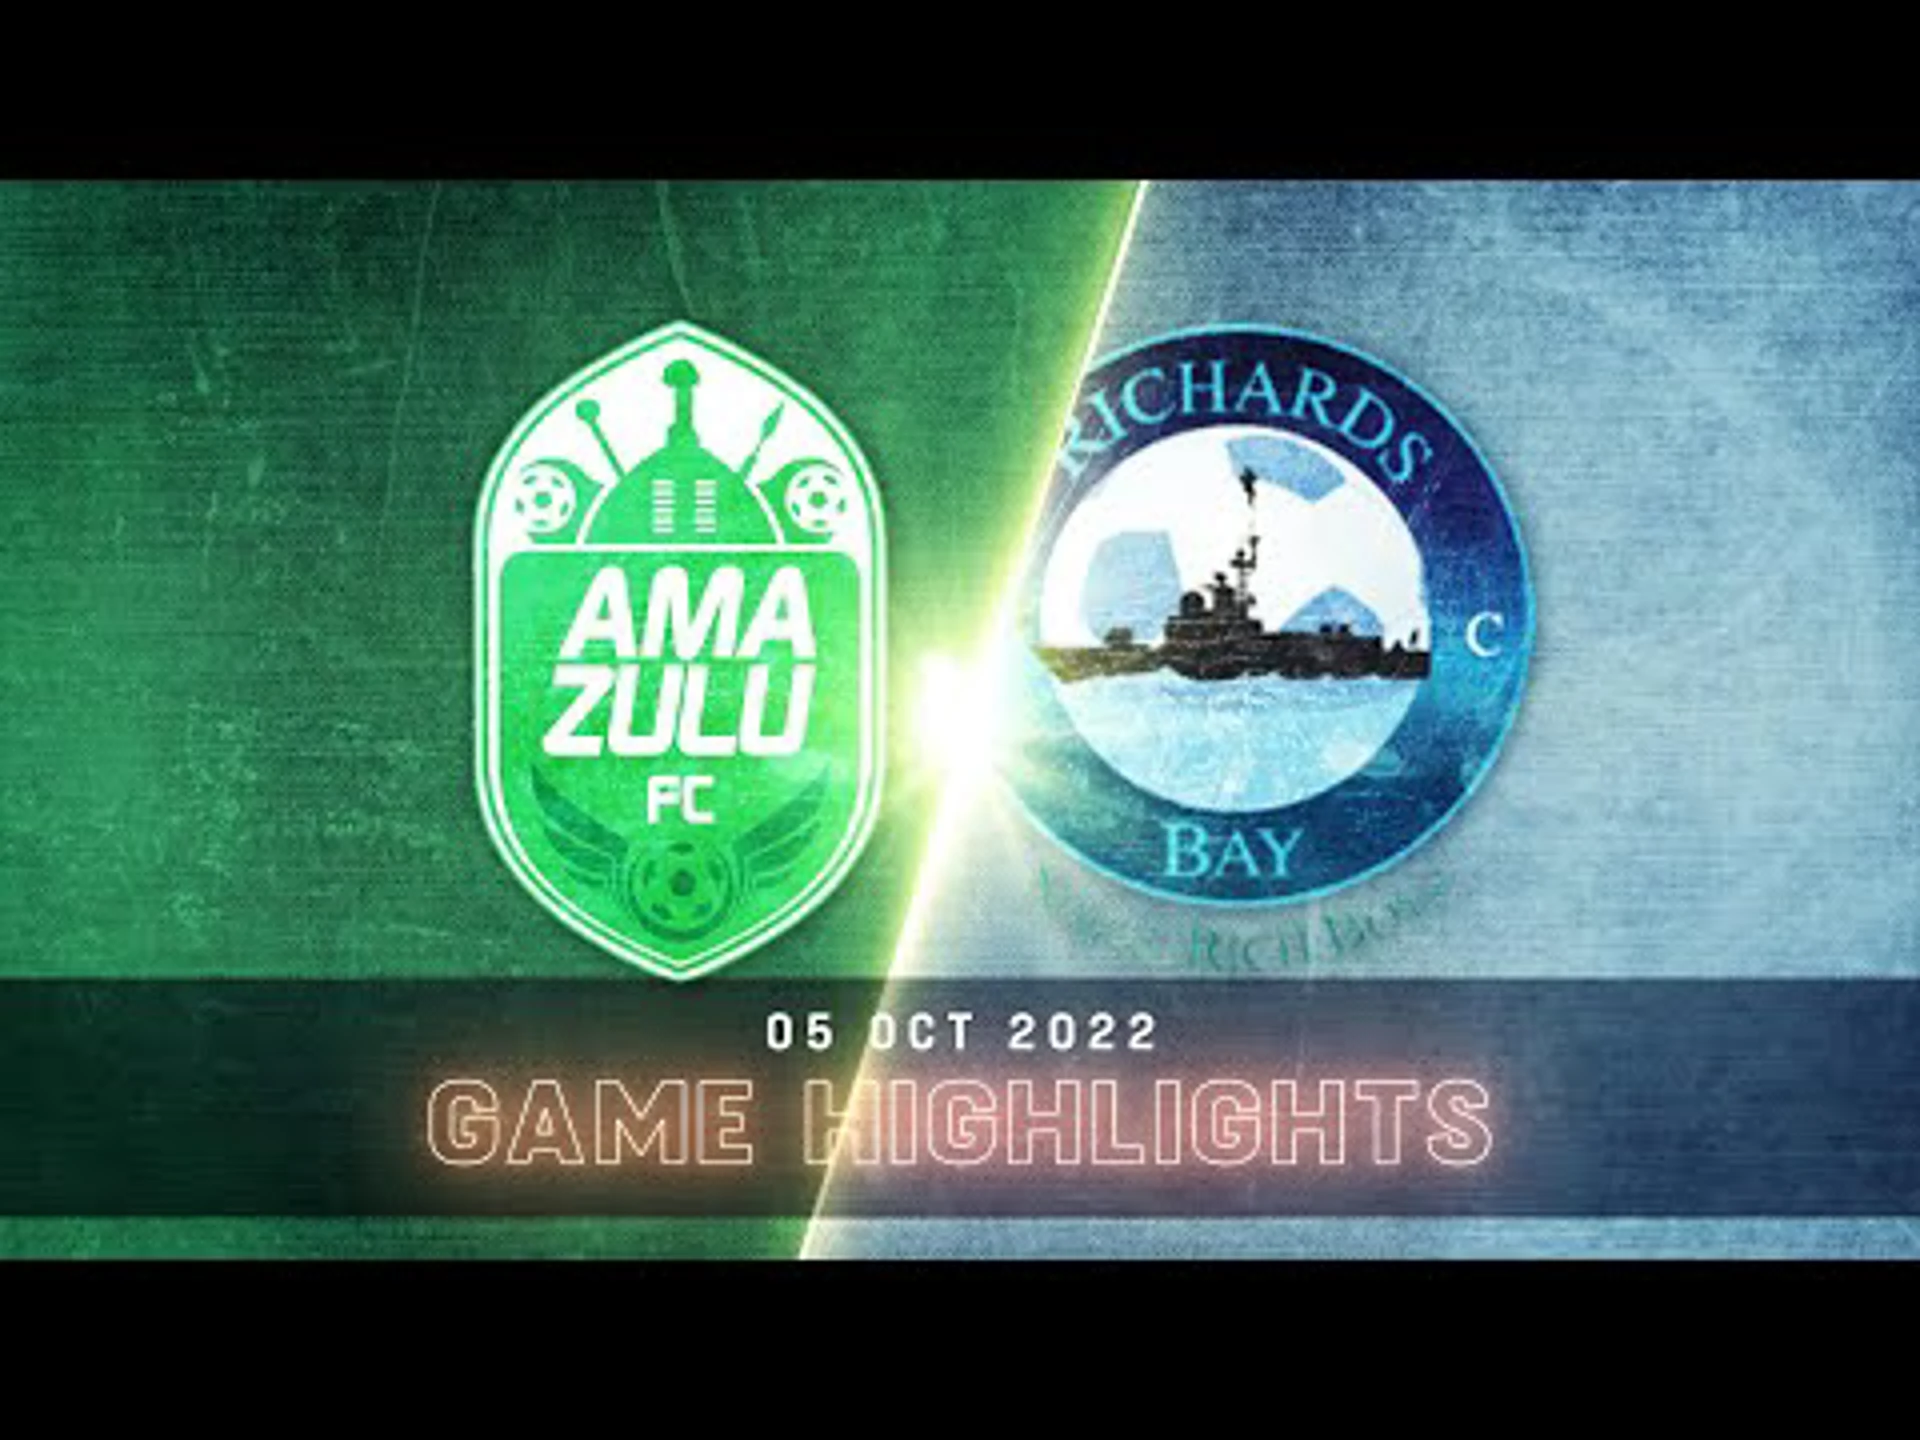 DStv Premiership | AmaZulu vs. Richards Bay | Highlights